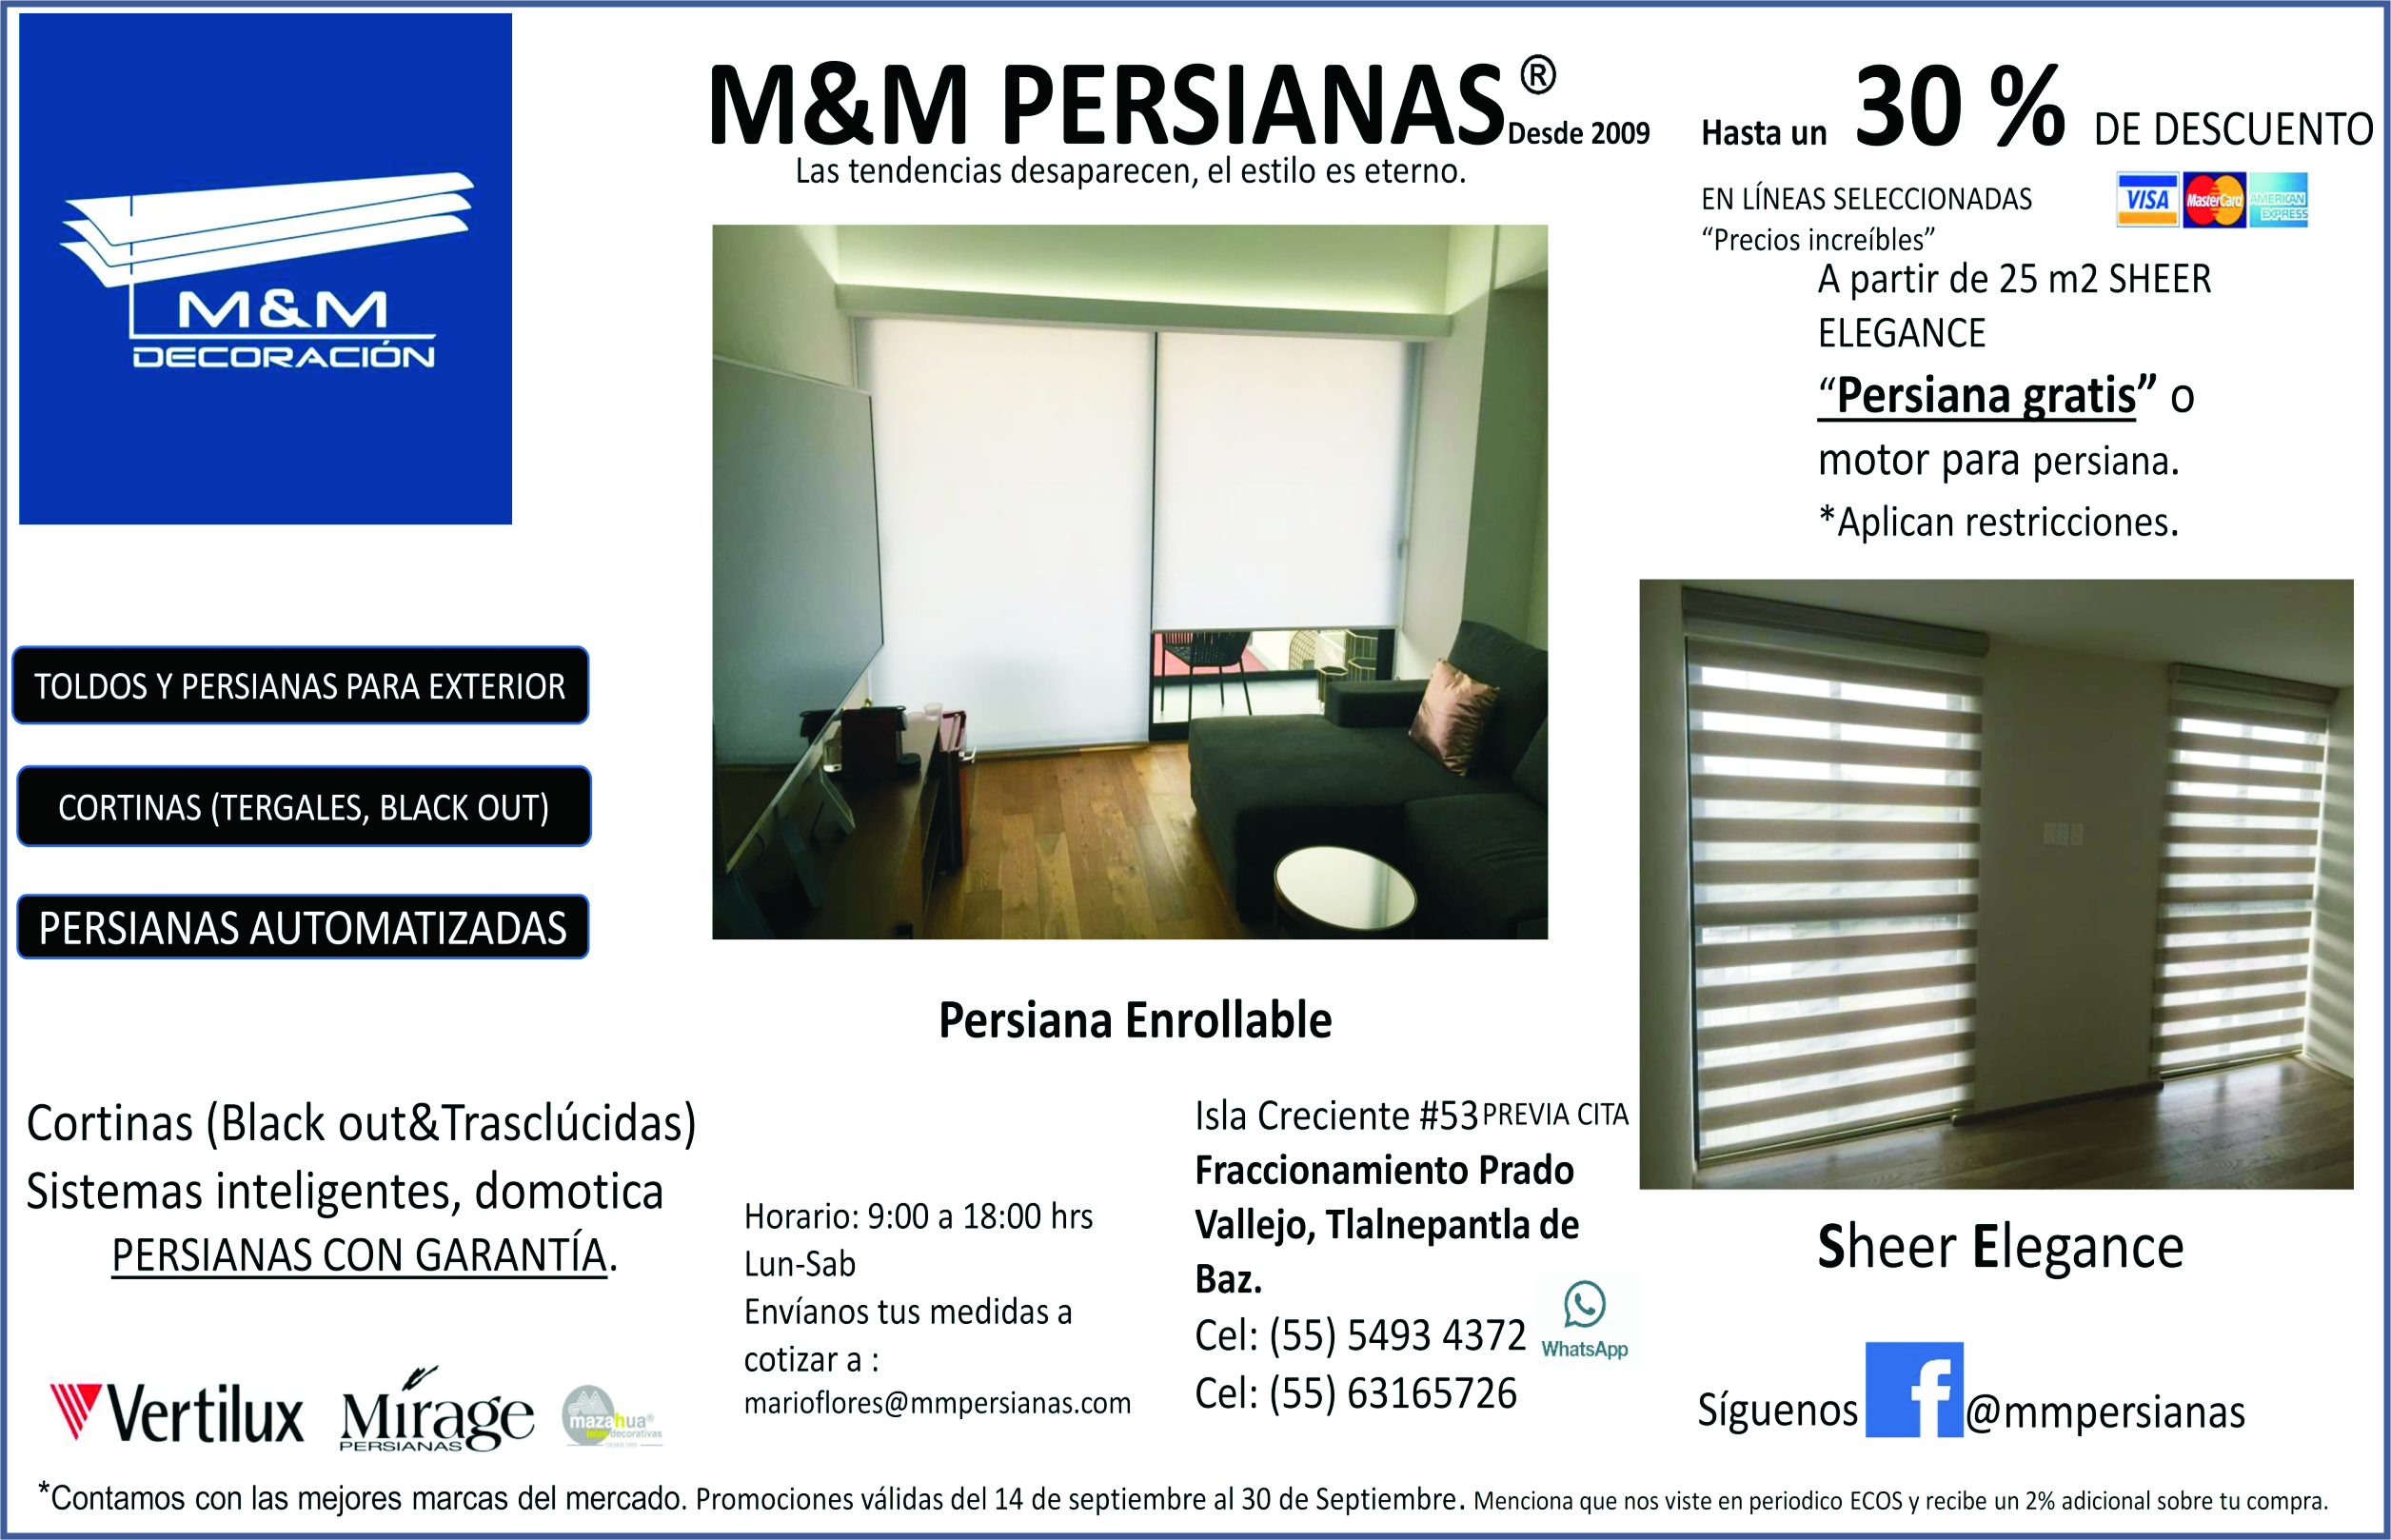 M&M PERSIANAS 5554934372